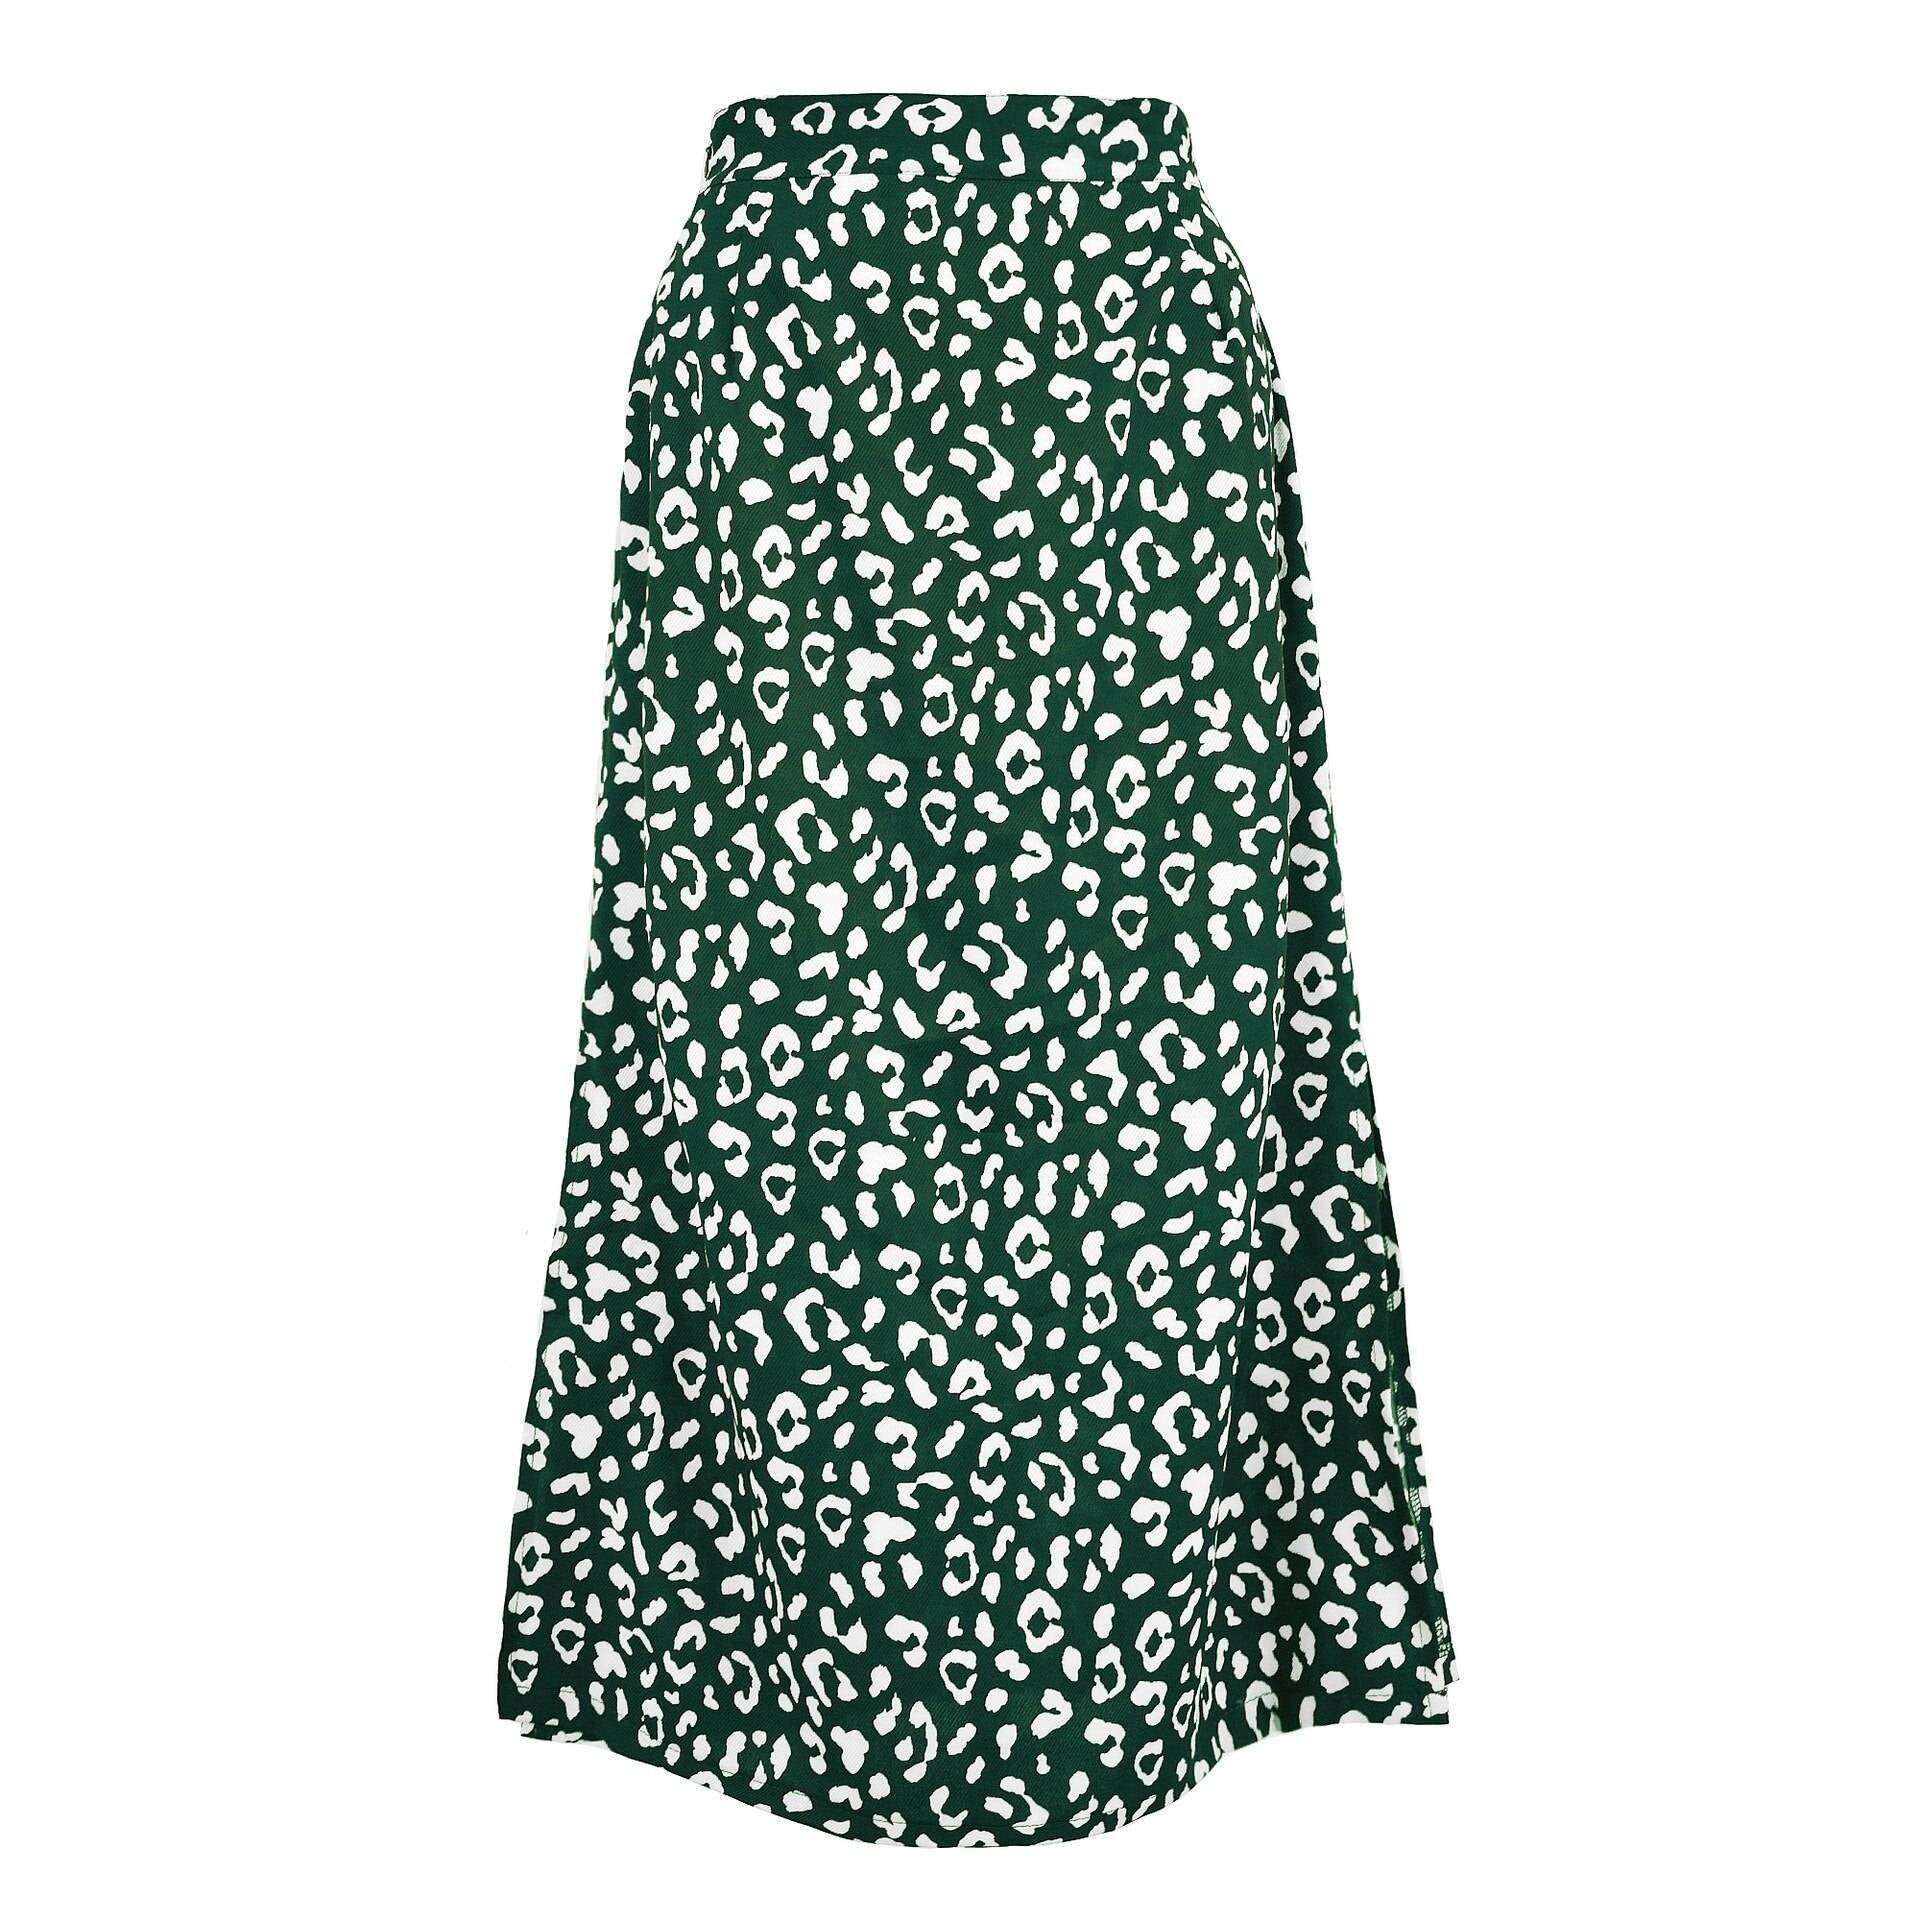 Sexy Leopard Wrap Skirt - Green / S - Bottoms - Skirts - 18 - 2024